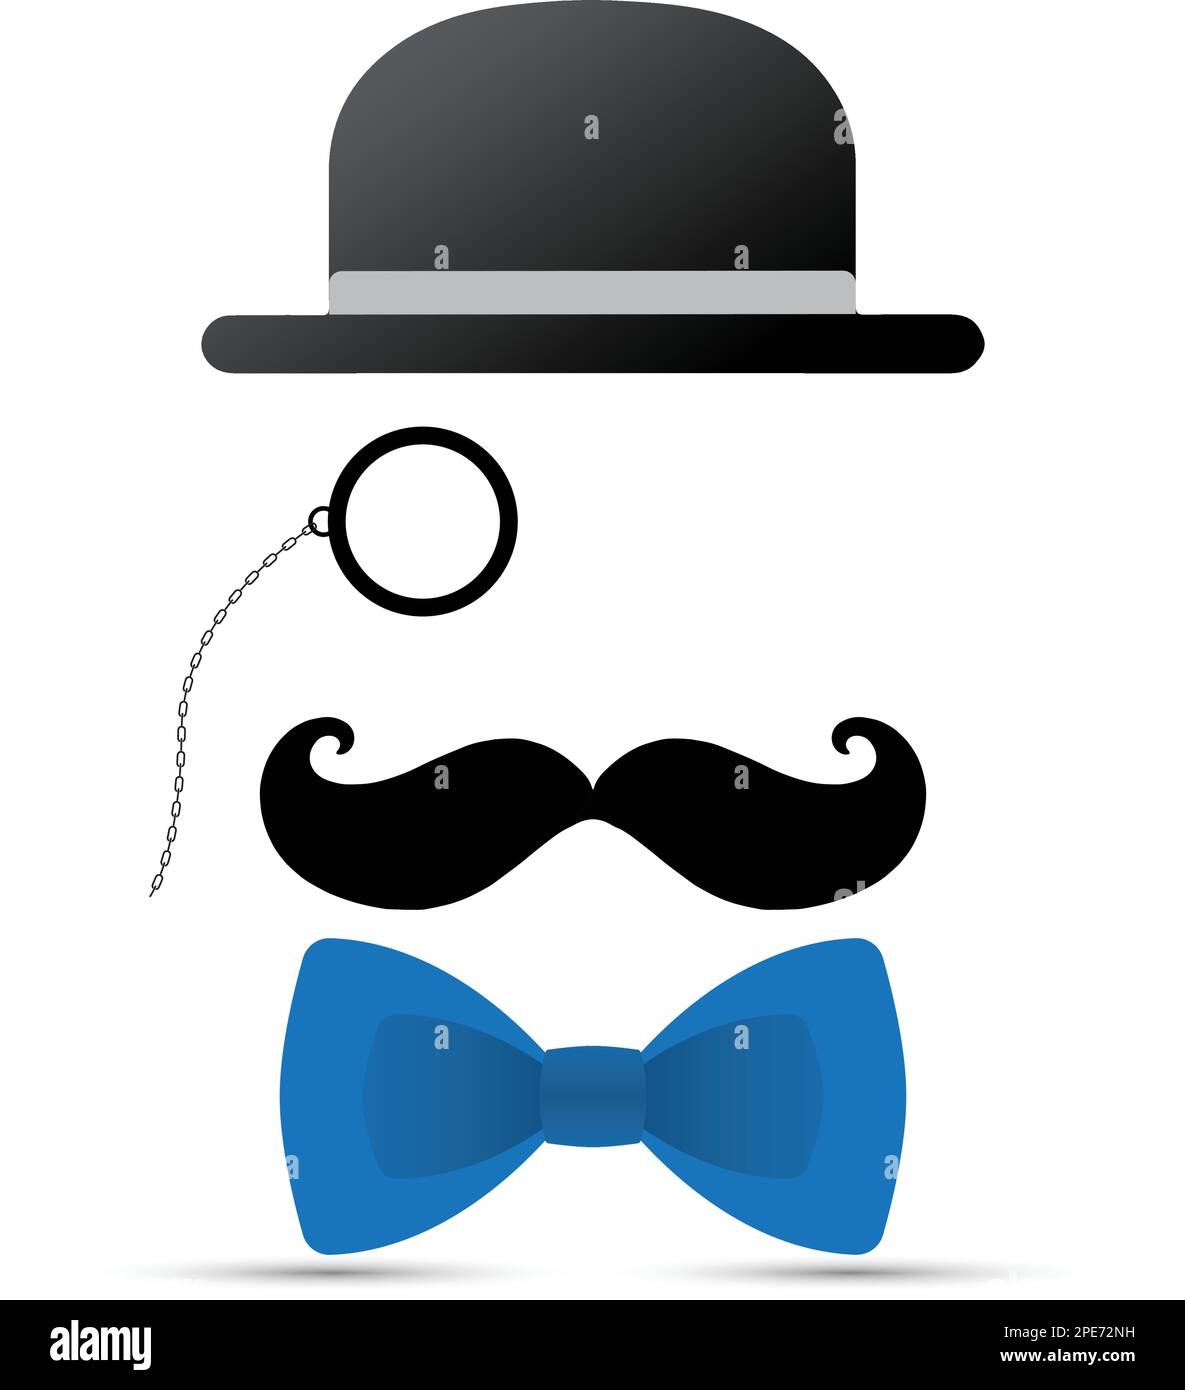 Schwarzer Schnurrbart, Monokel, Hut und blaue Fliege auf weißem Hintergrund Stock Vektor